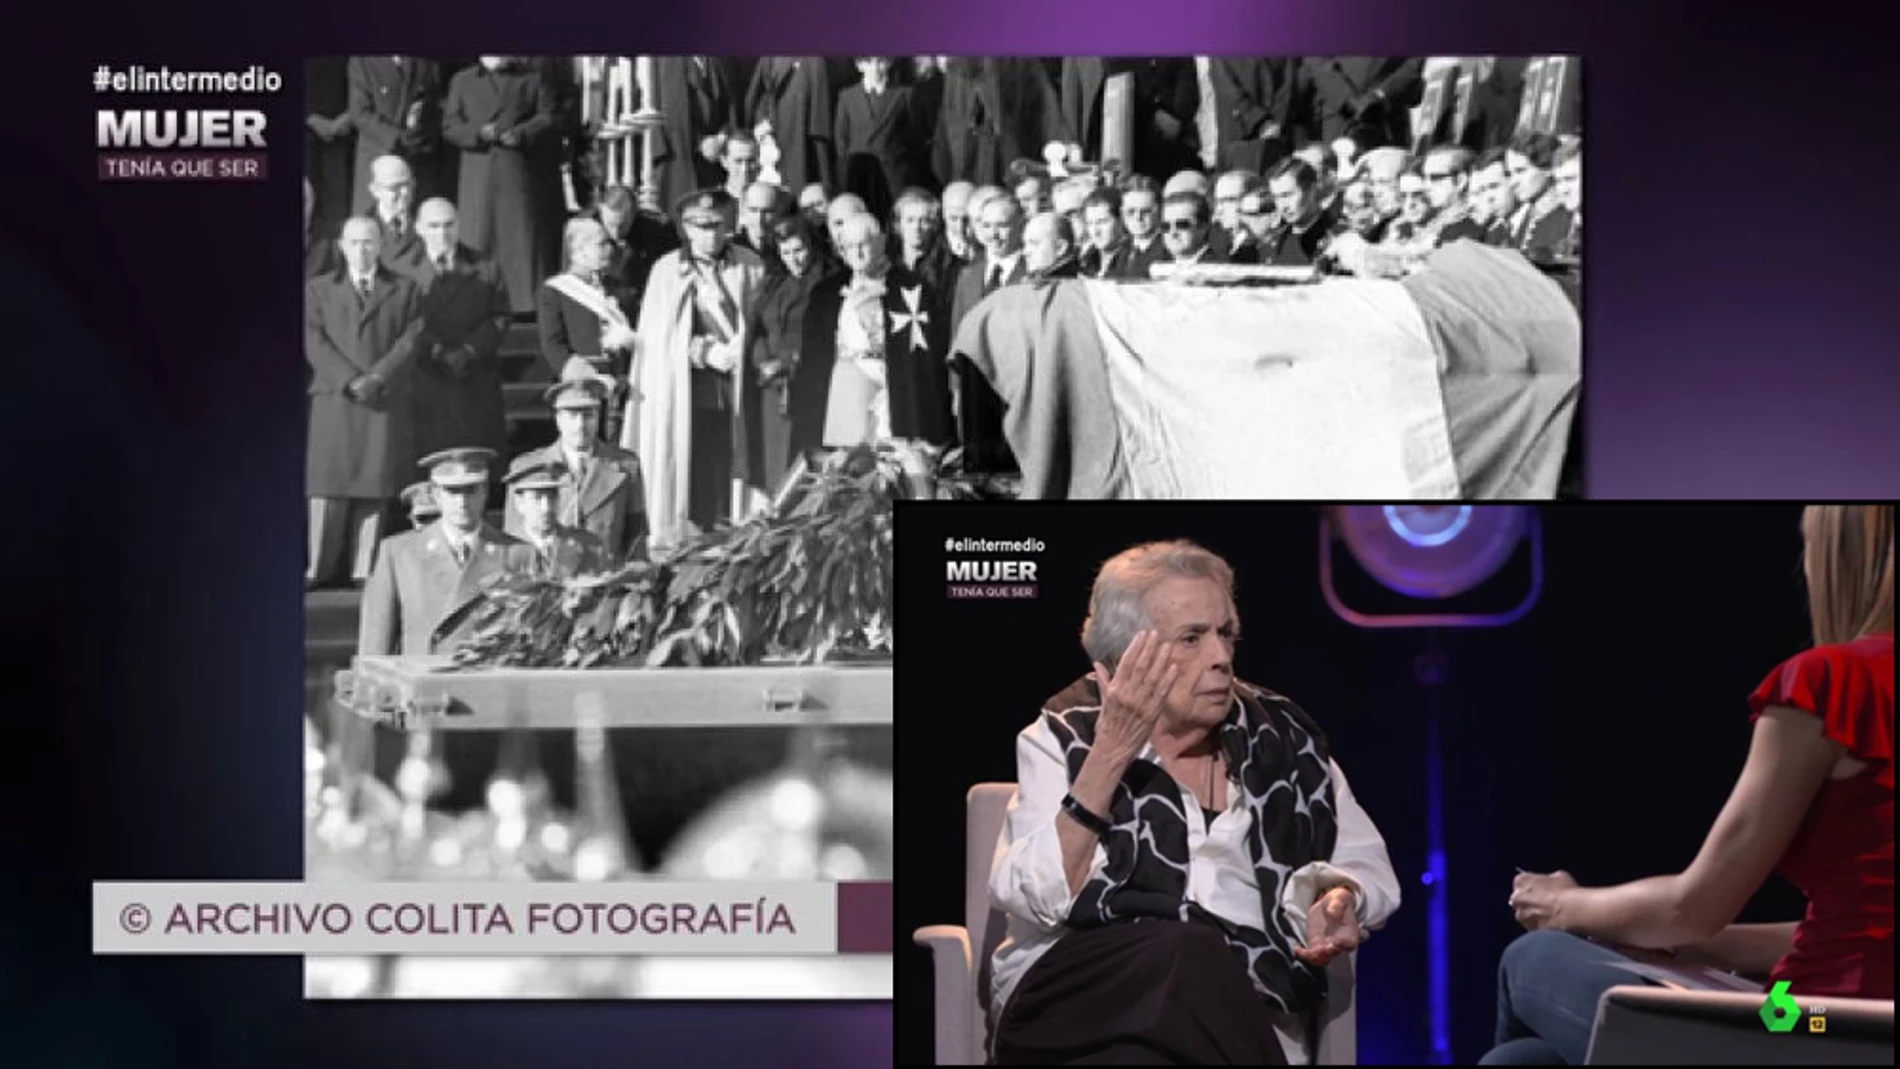 La fotógrafa Colita se disfrazó para colarse en el entierro de Franco